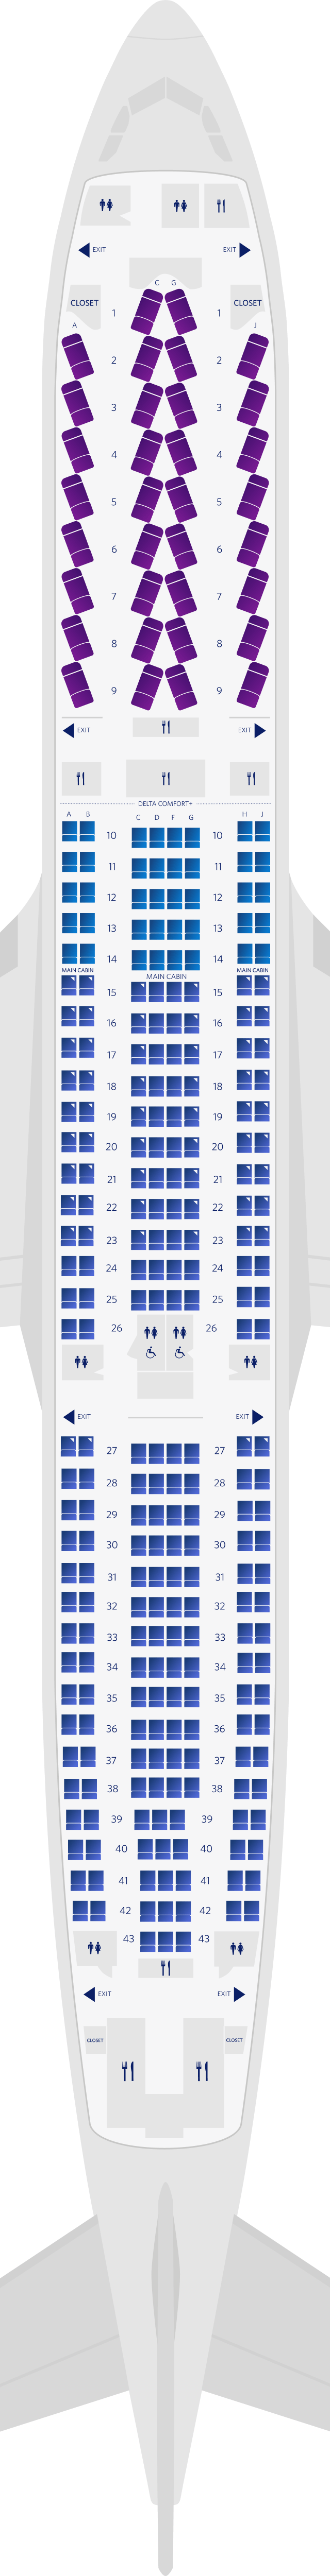 Mappa dei posti delle 3 cabine dell’Airbus A300-300 (333)